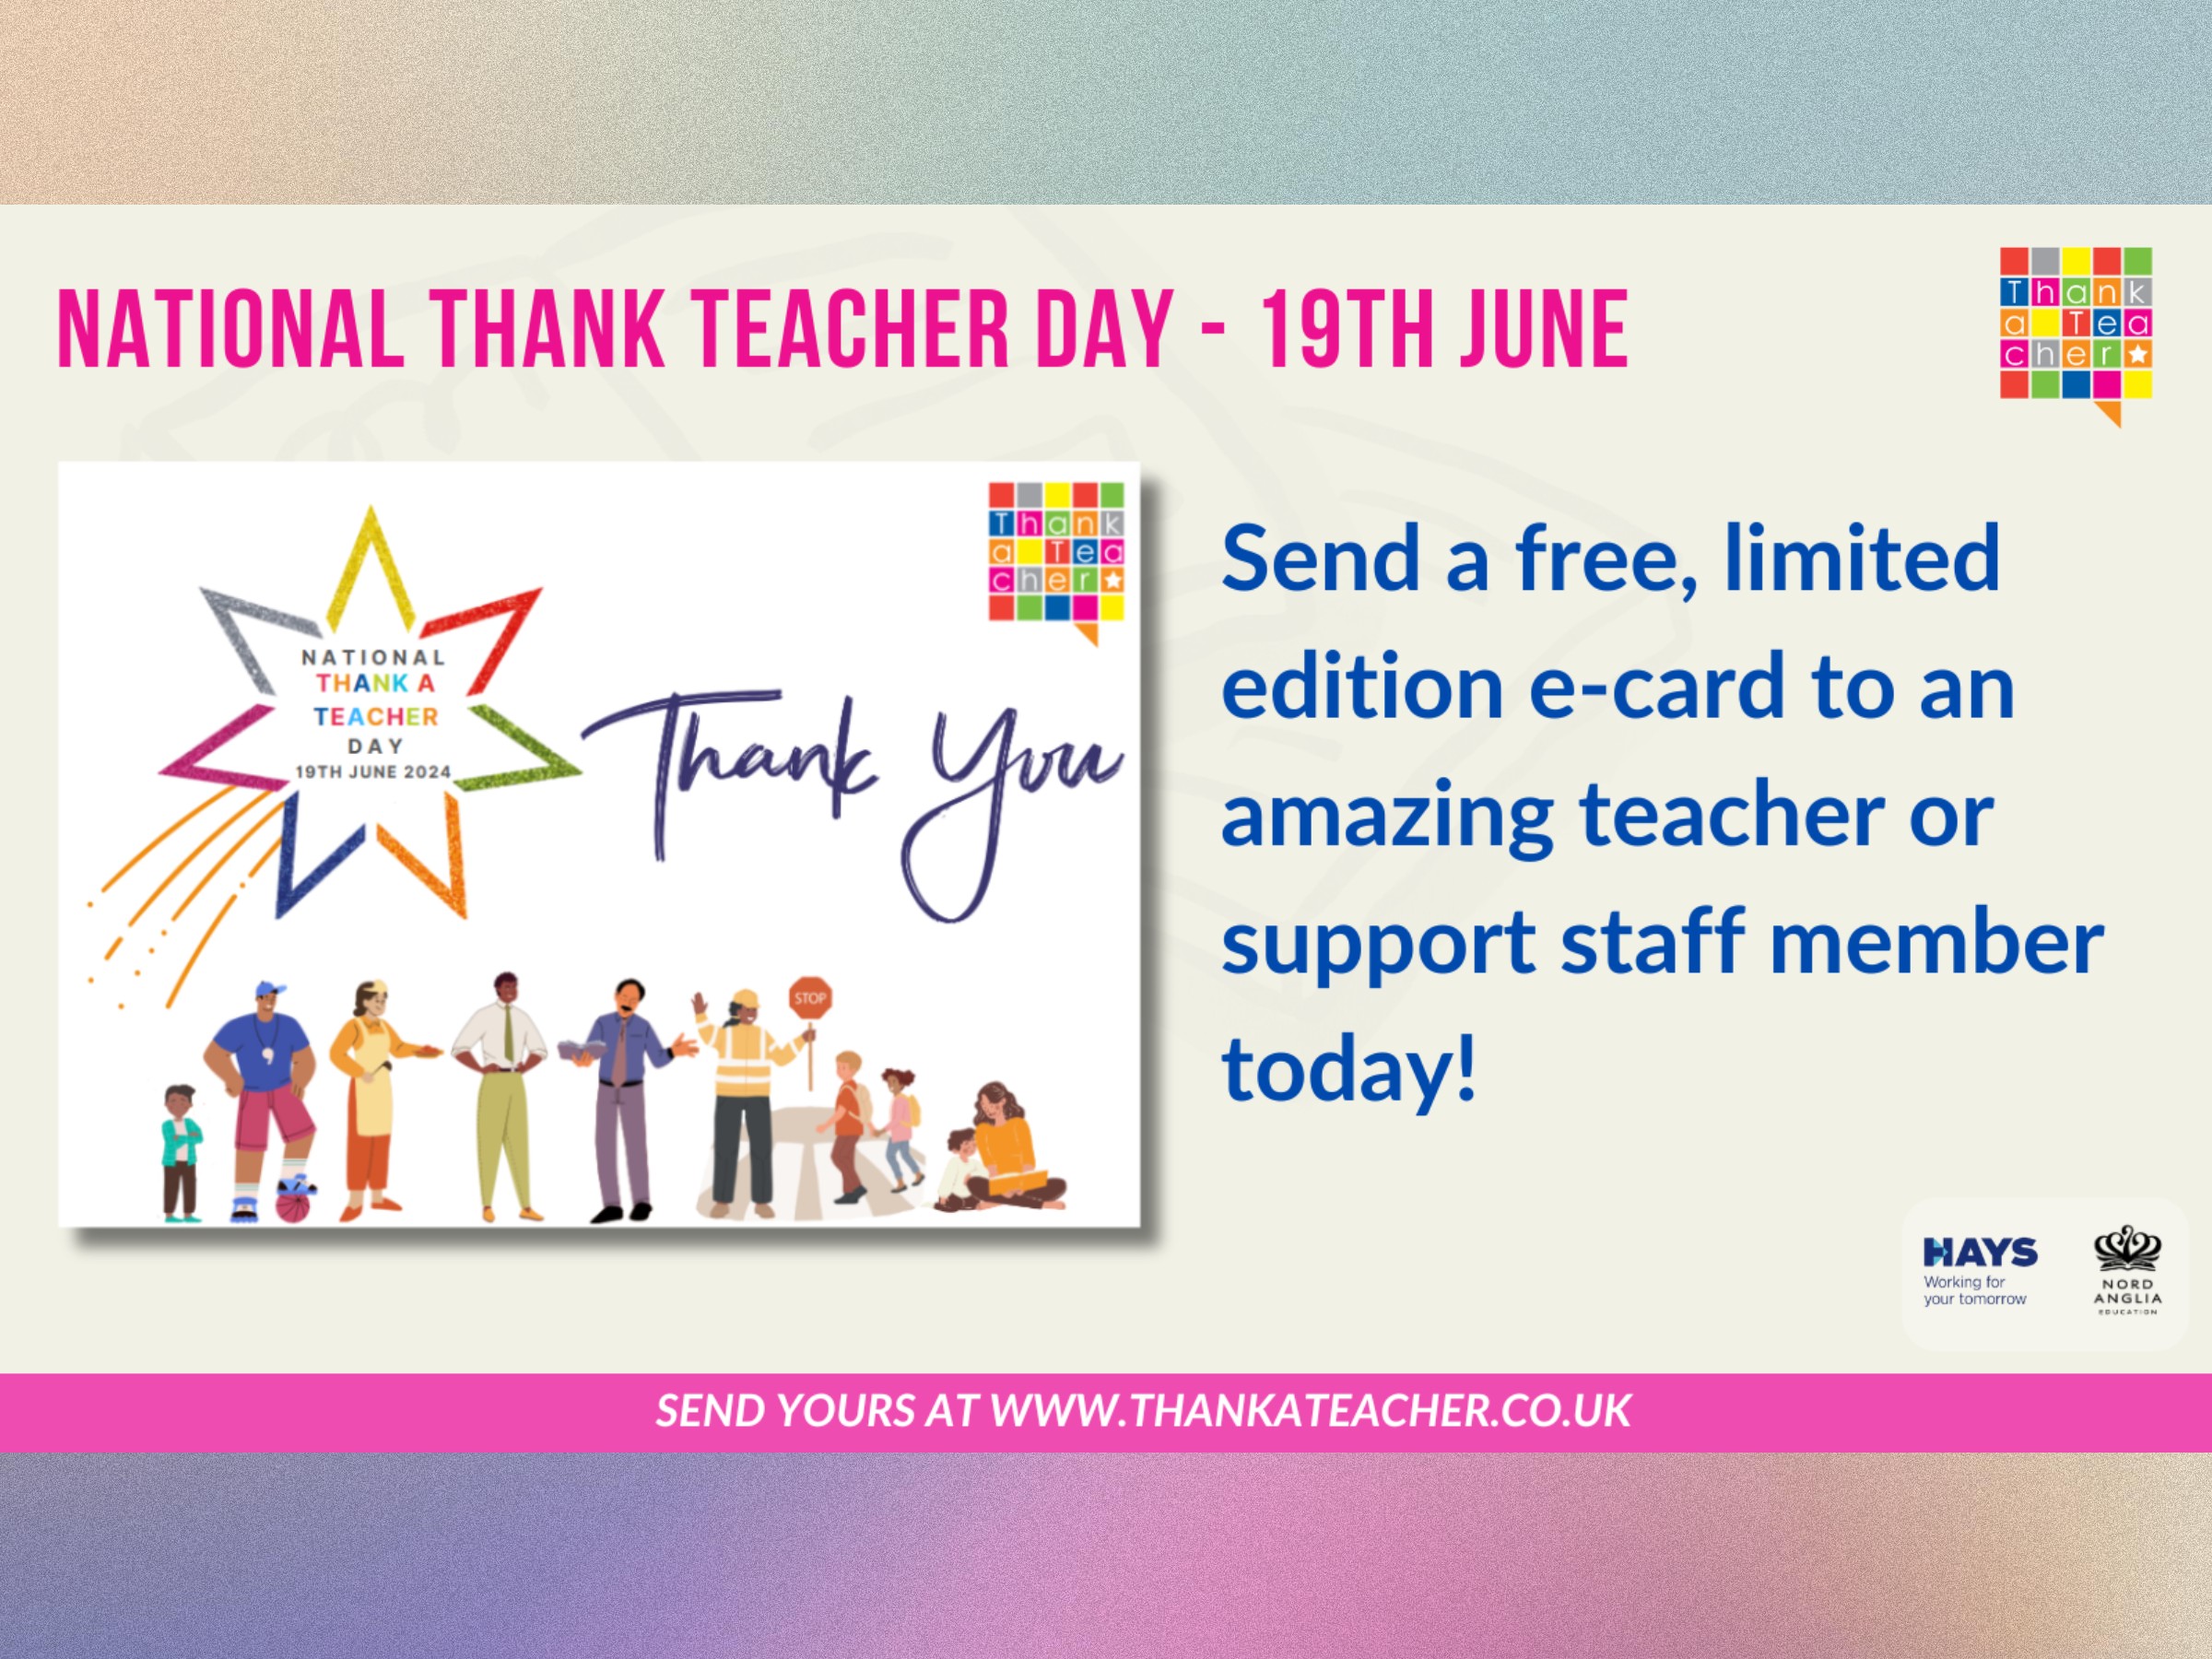 June 19th: National Thank A Teacher Day